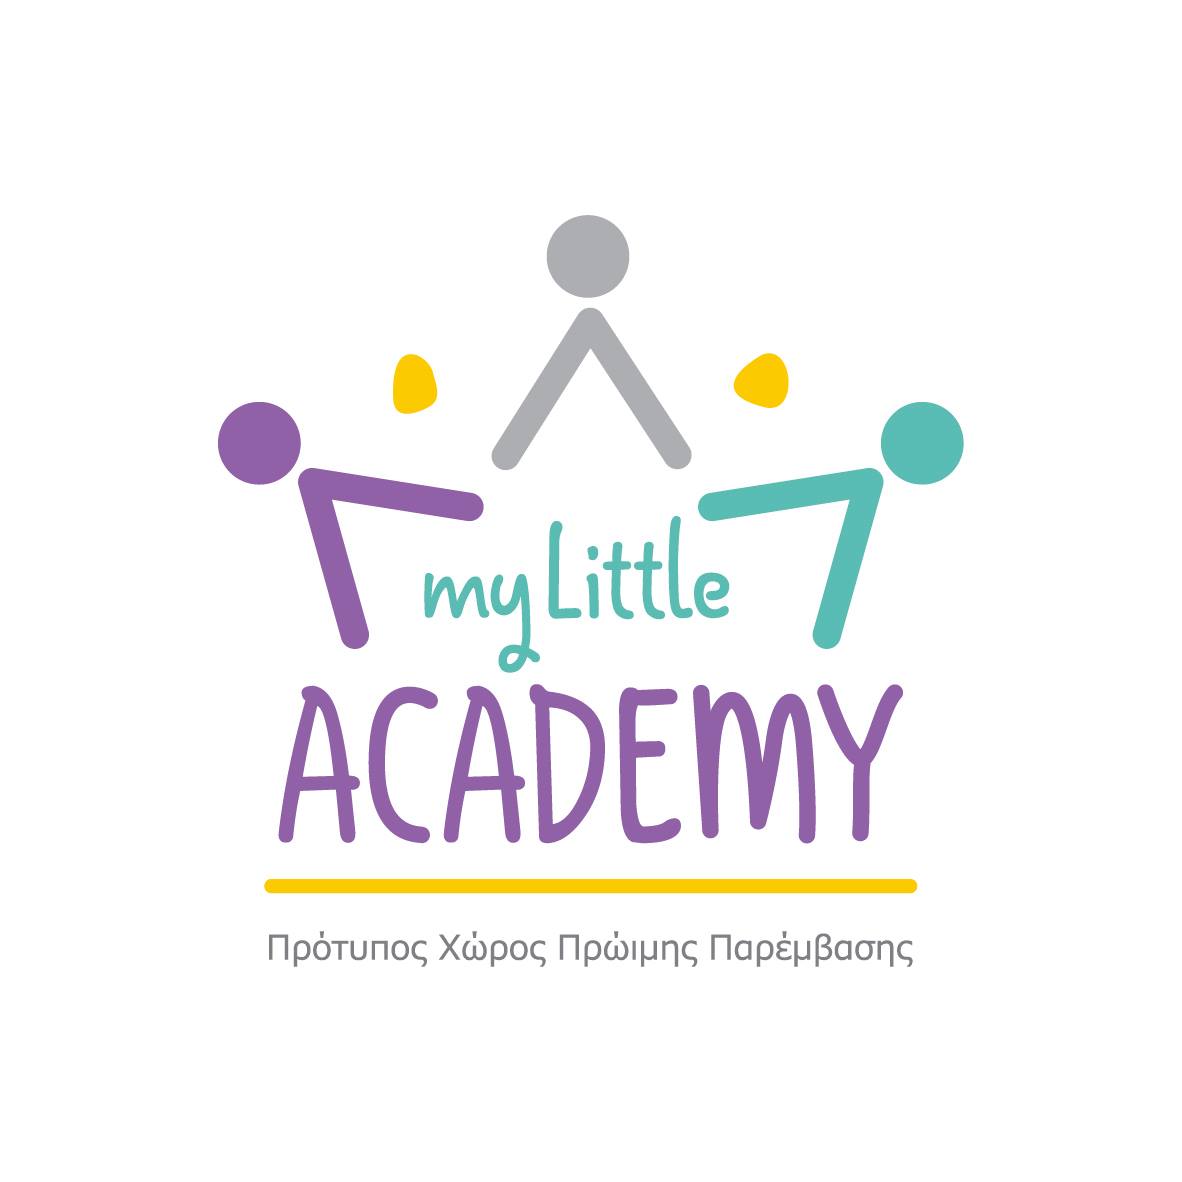 Λογότυπο του ΜY LITTLE ACADEMY, ενός νέου πρότυπου χώρου πρώιμης παιδικής παρέμβασης, στη Νέα Σμύρνη.